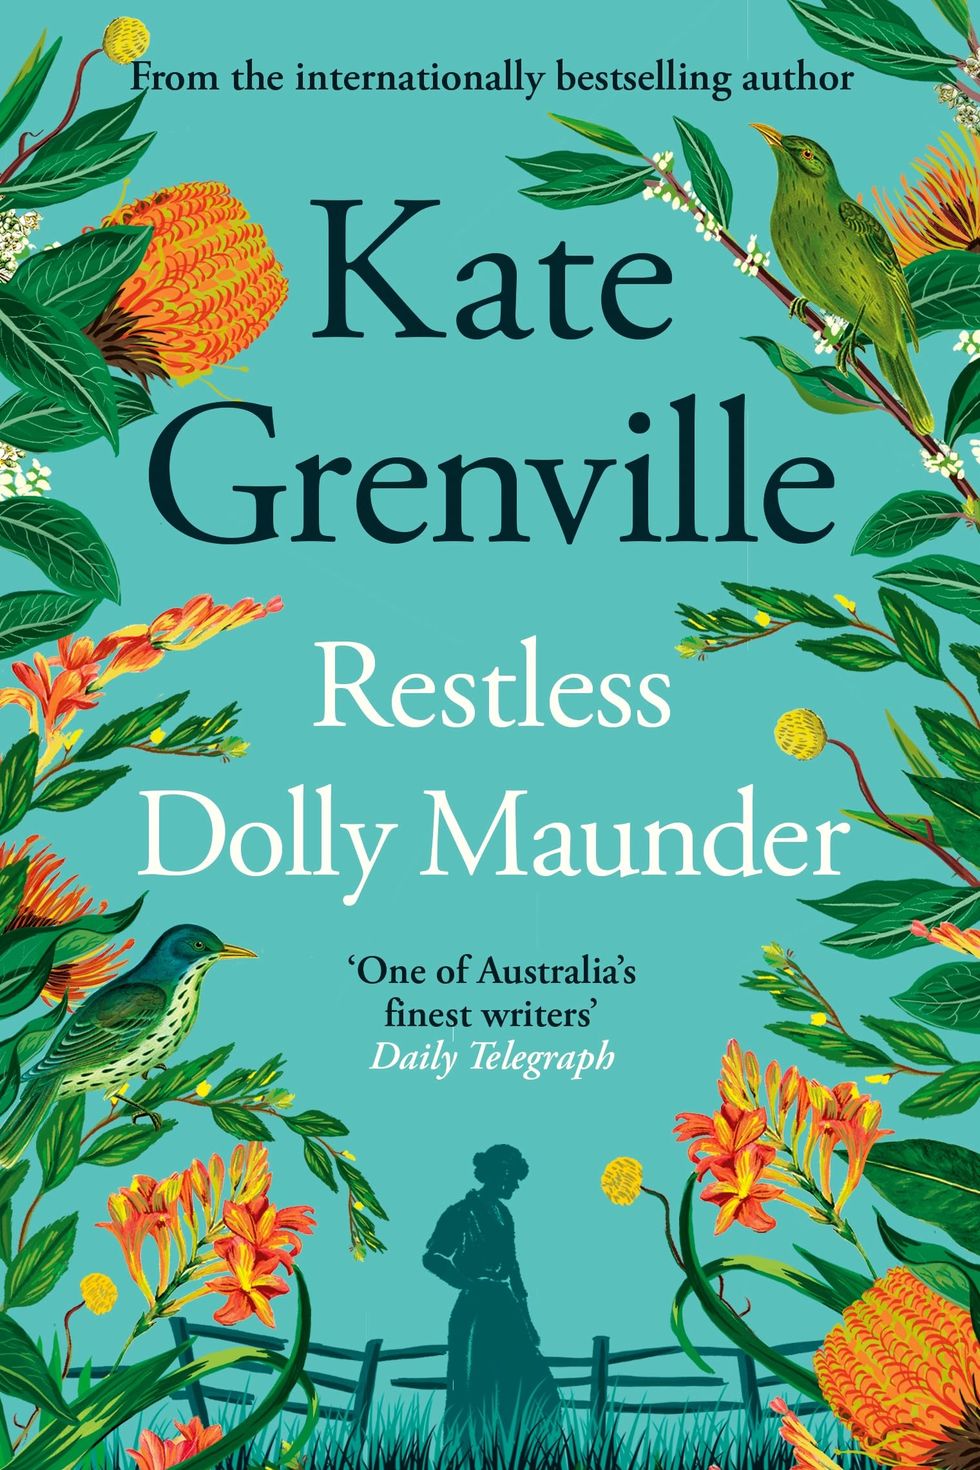 Kate Grenville, 'Restless Dolly Maunder'